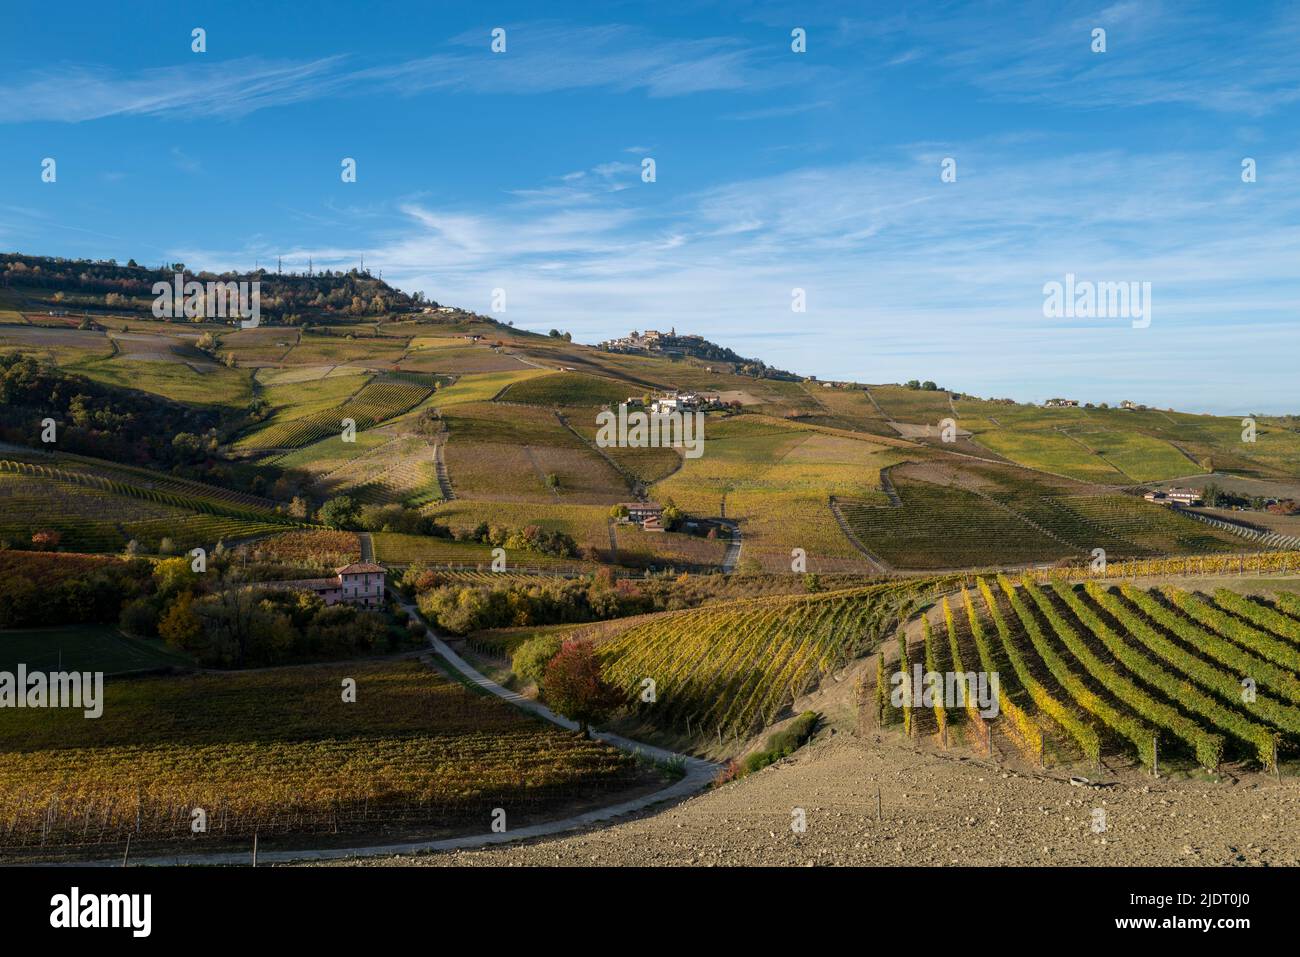 Lumière d'automne dans les vignobles de Barolo, Cuneo au milieu des collines vallonnées et des villages au sommet d'une colline première pointe d'automne dans la région viticole. Banque D'Images